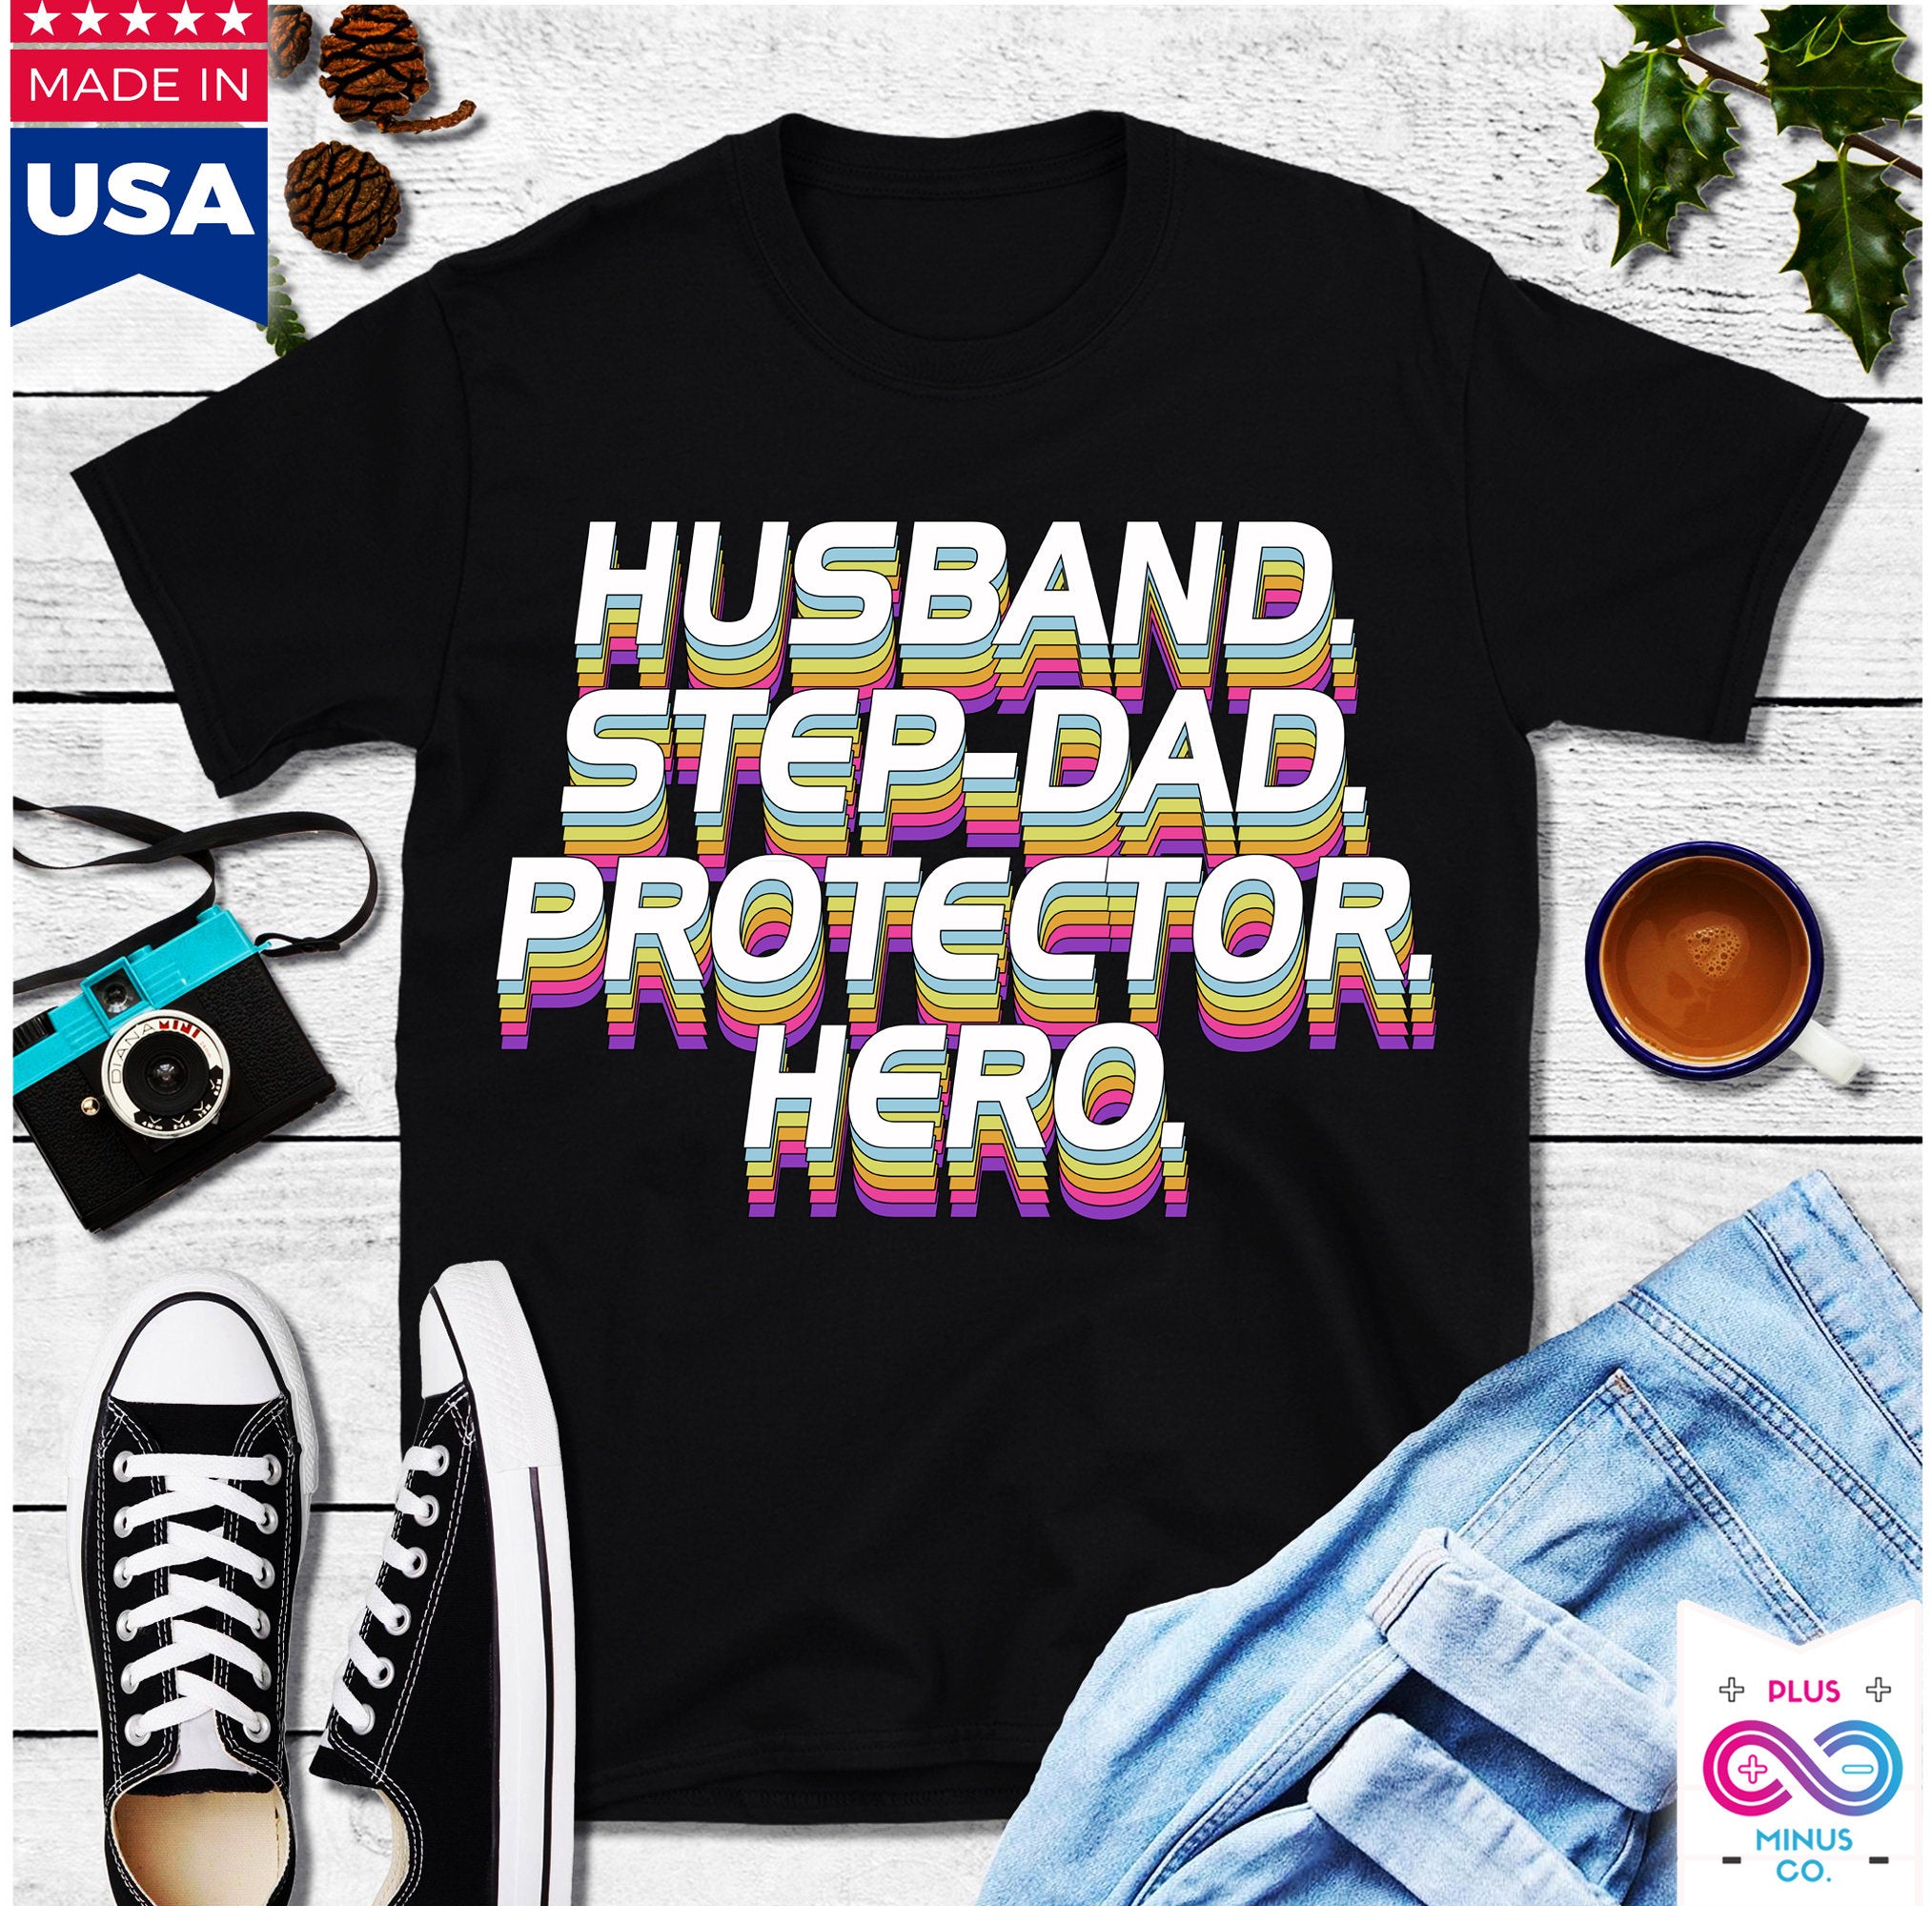 Футболкі Husband Daddy Protector Hero, падарунак на Дзень бацькі, персаналізаваная кашуля для таты, кашуля-герой, падарунак на Дзень бацькі, футболка для таты, кашуля на Дзень бацькі - plusminusco.com